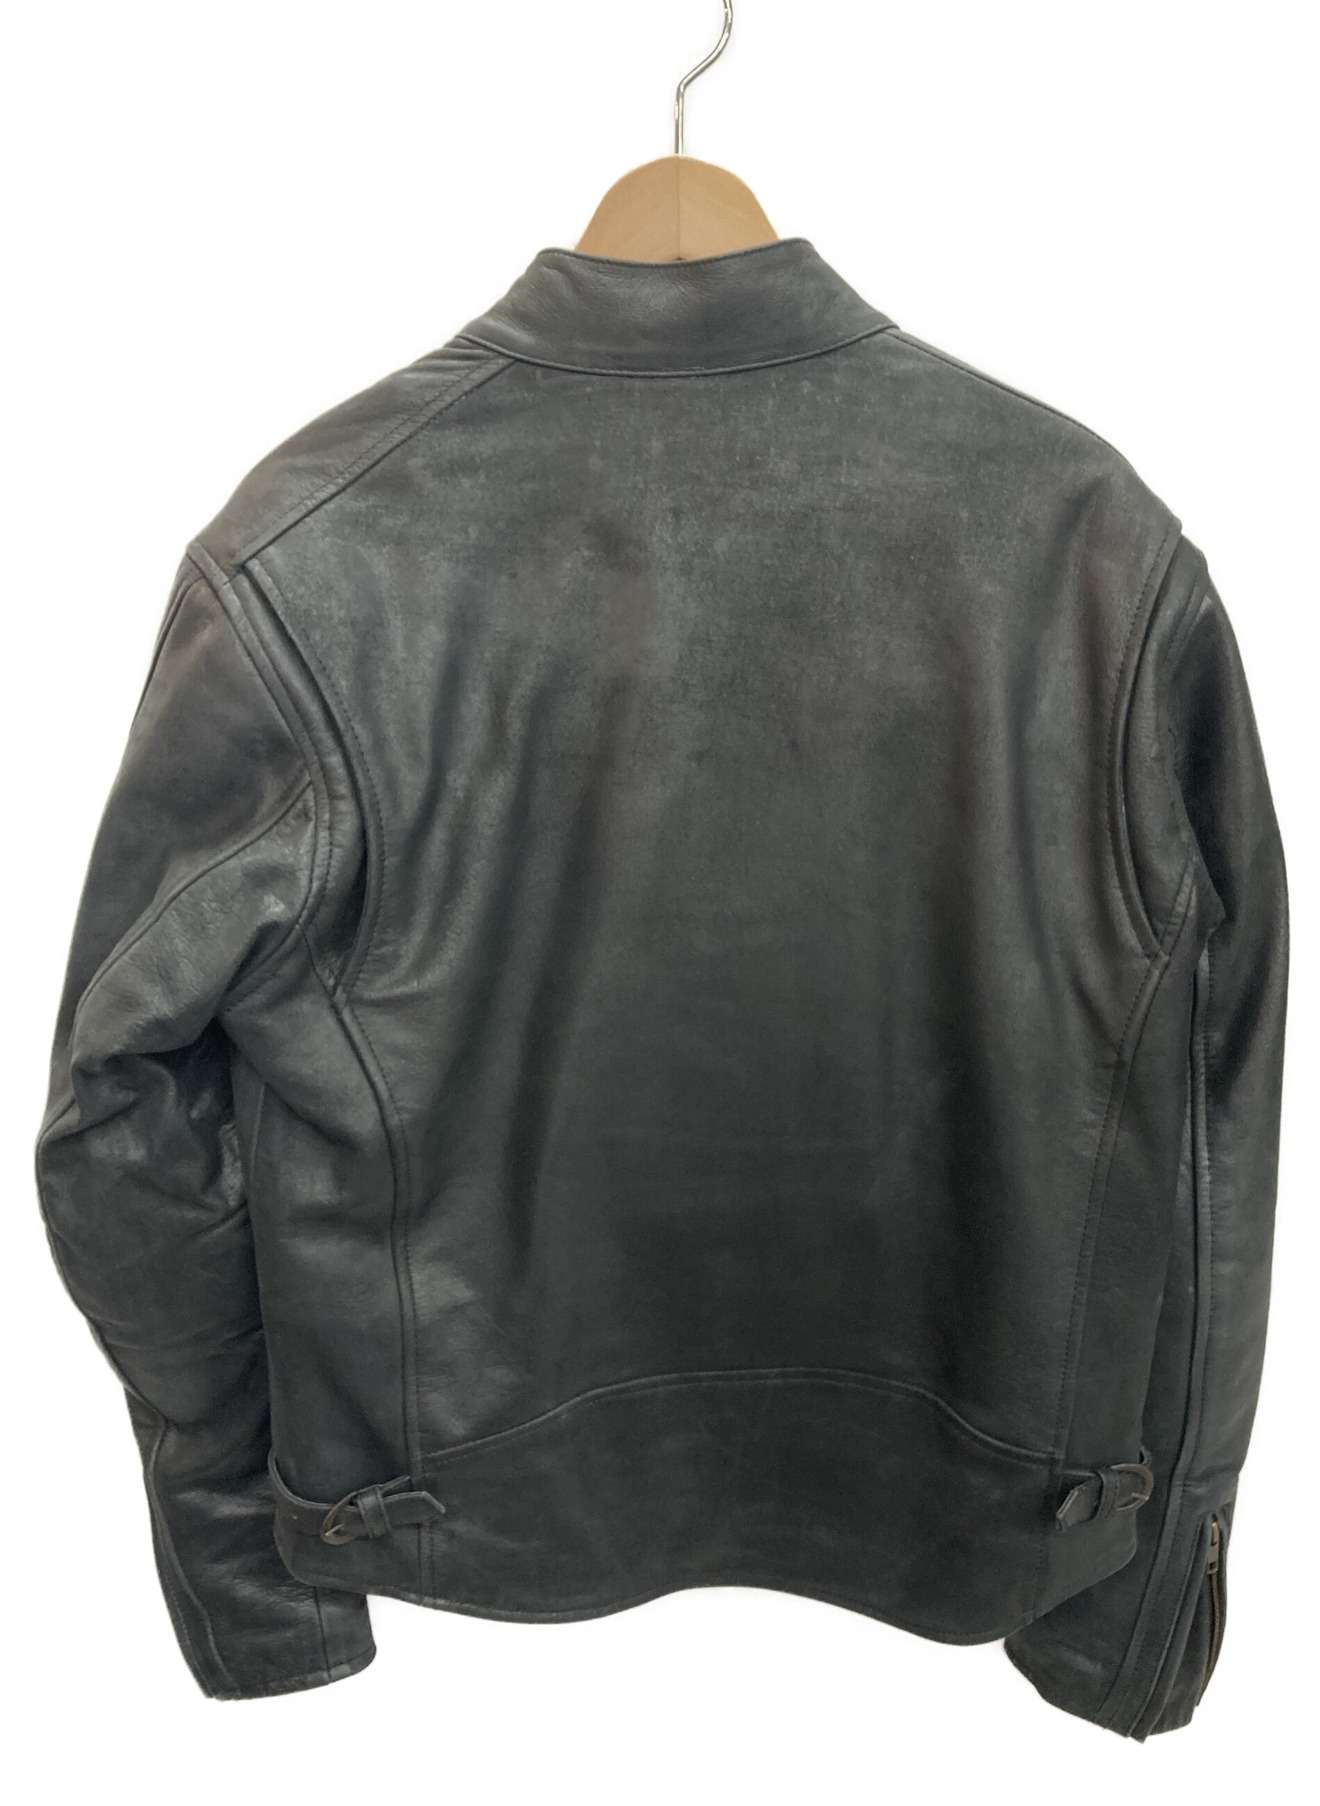 DEGNER CLASSIC BRAND (デグナー クラシック ブランド) レザーライダースジャケット ブラック サイズ:L